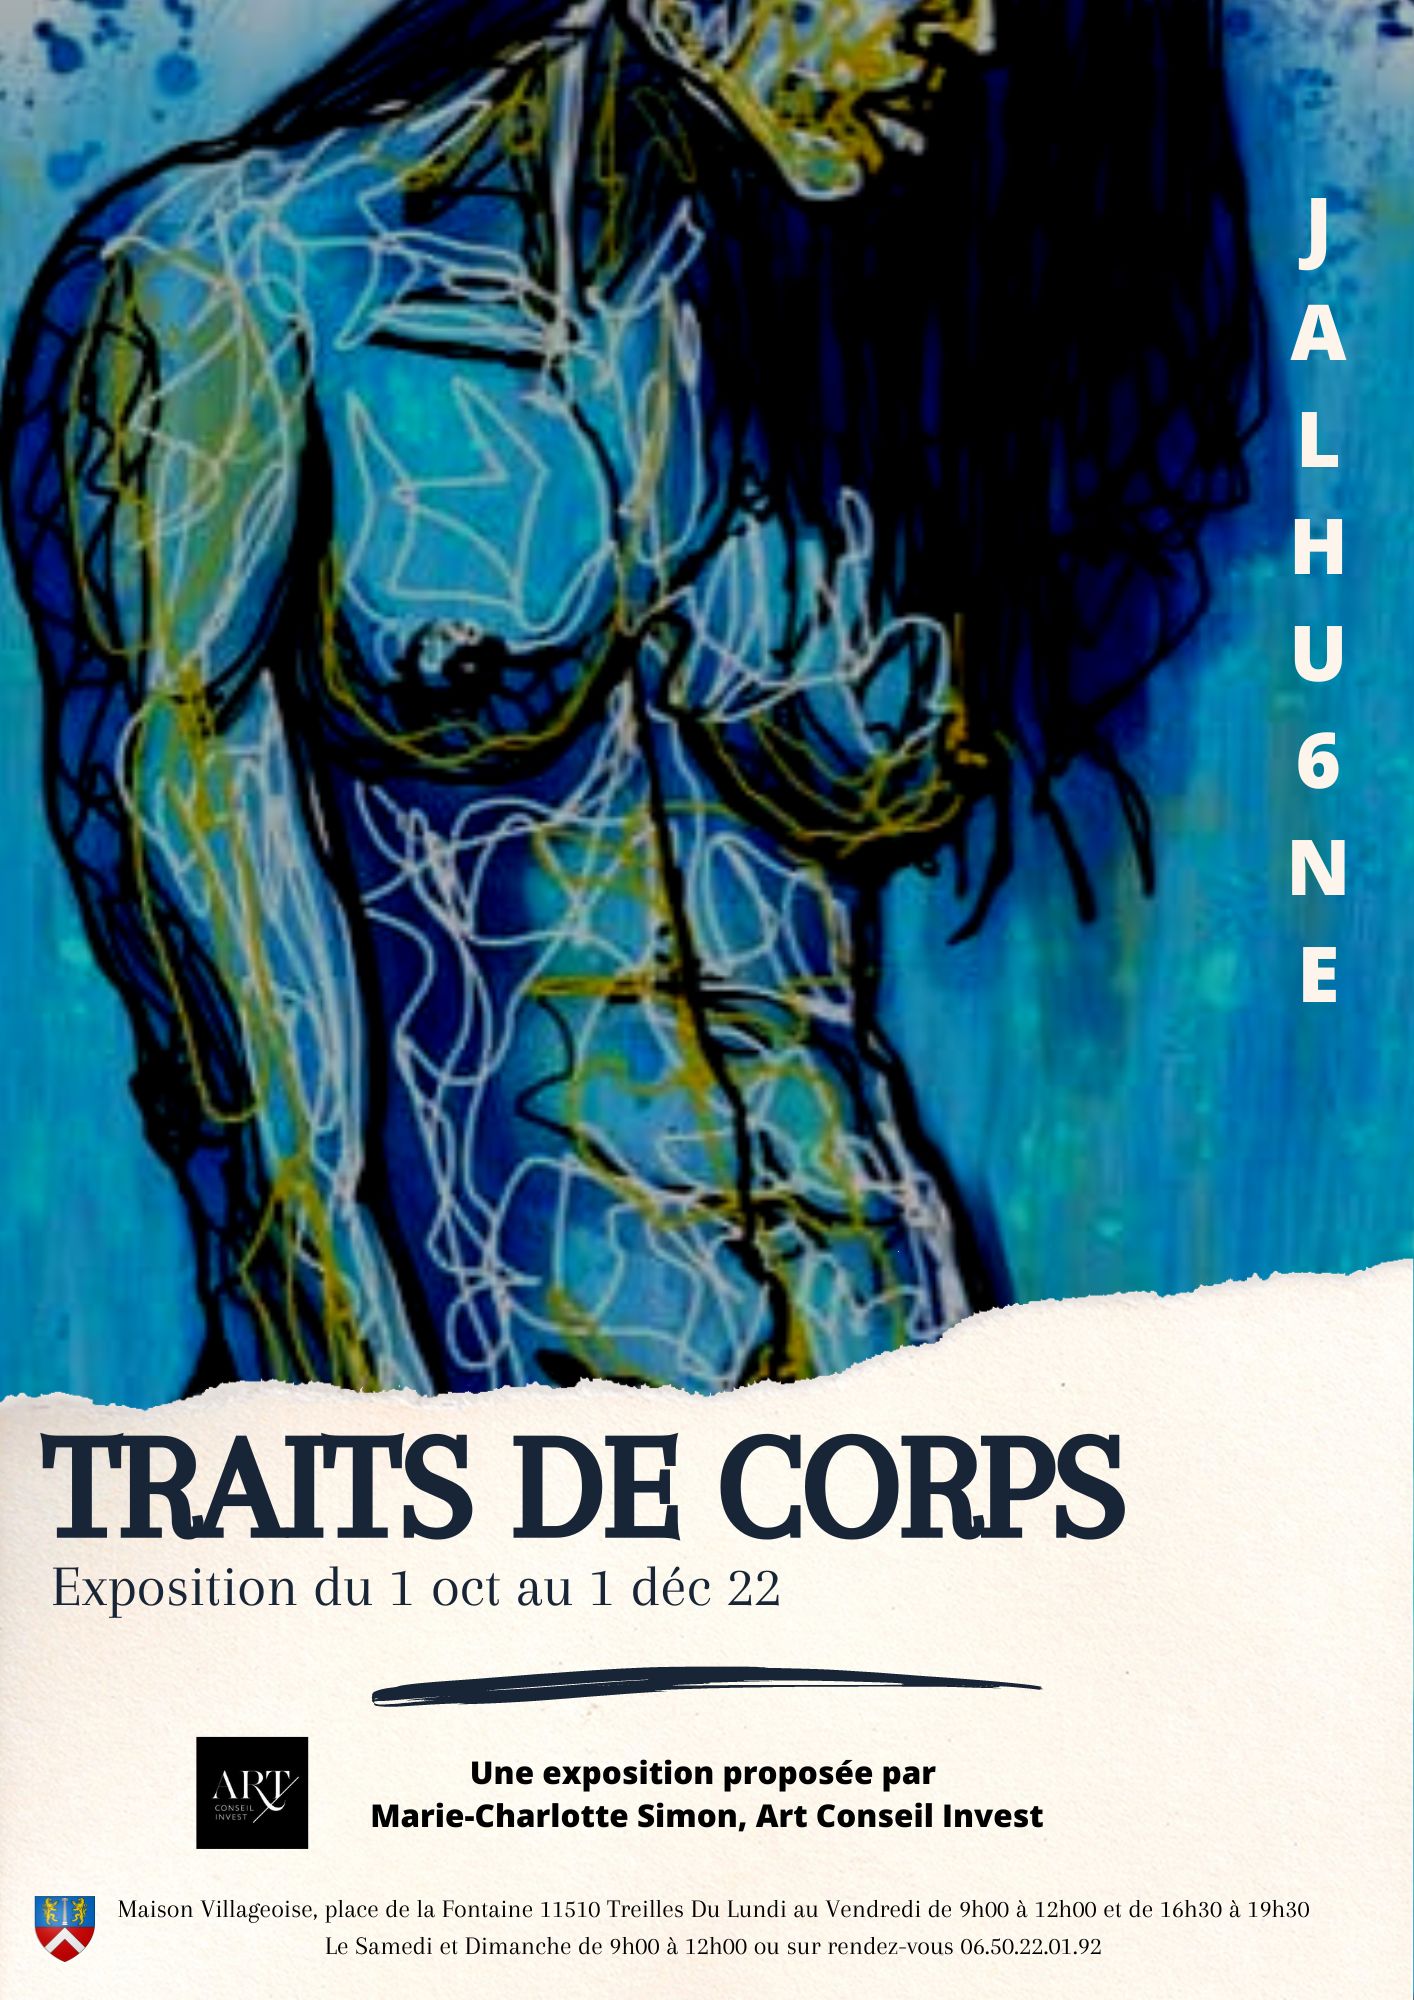 AFFICHE TRAITS DE CORPS en A4.jpg